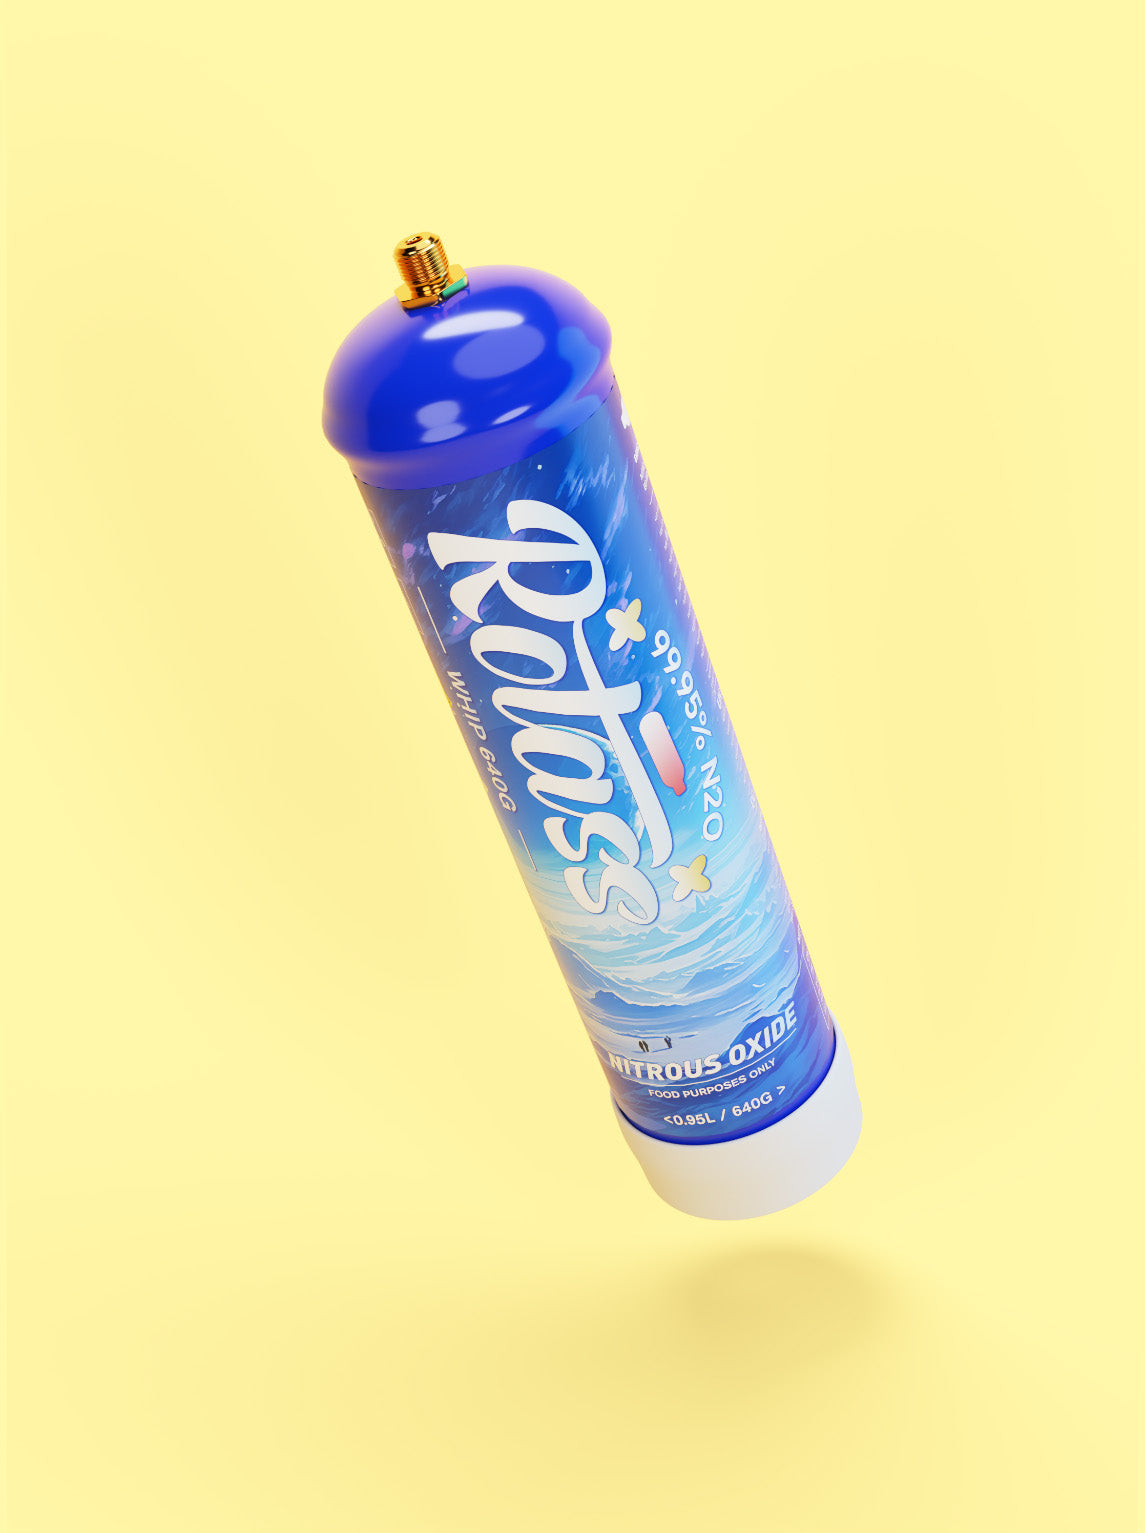 Gekippte Ansicht: Die Gasflasche ist im Antarktis-Style designed, mit dem weißen Logo "Rotass" 640g. Der Hintergrund ist hellgelb.